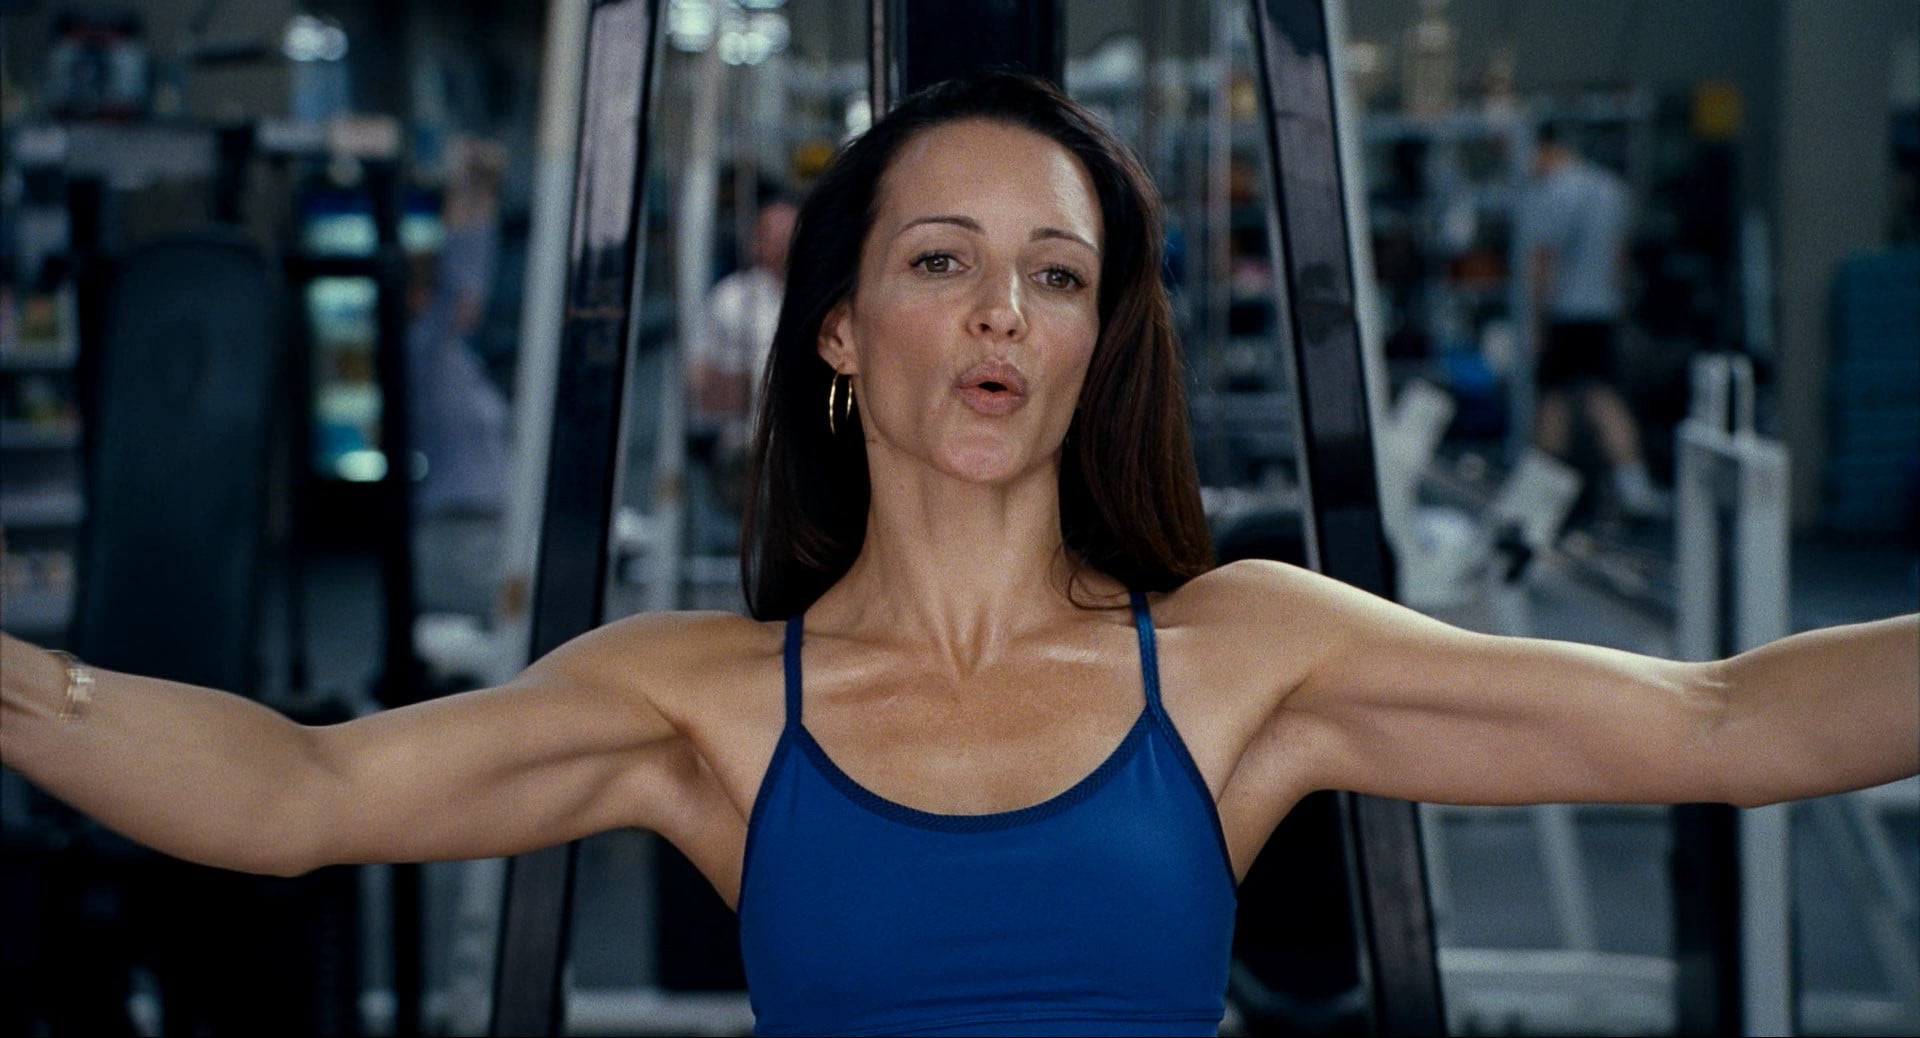 armpits, Kristin Davis, women, exercising, one person, lifestyles